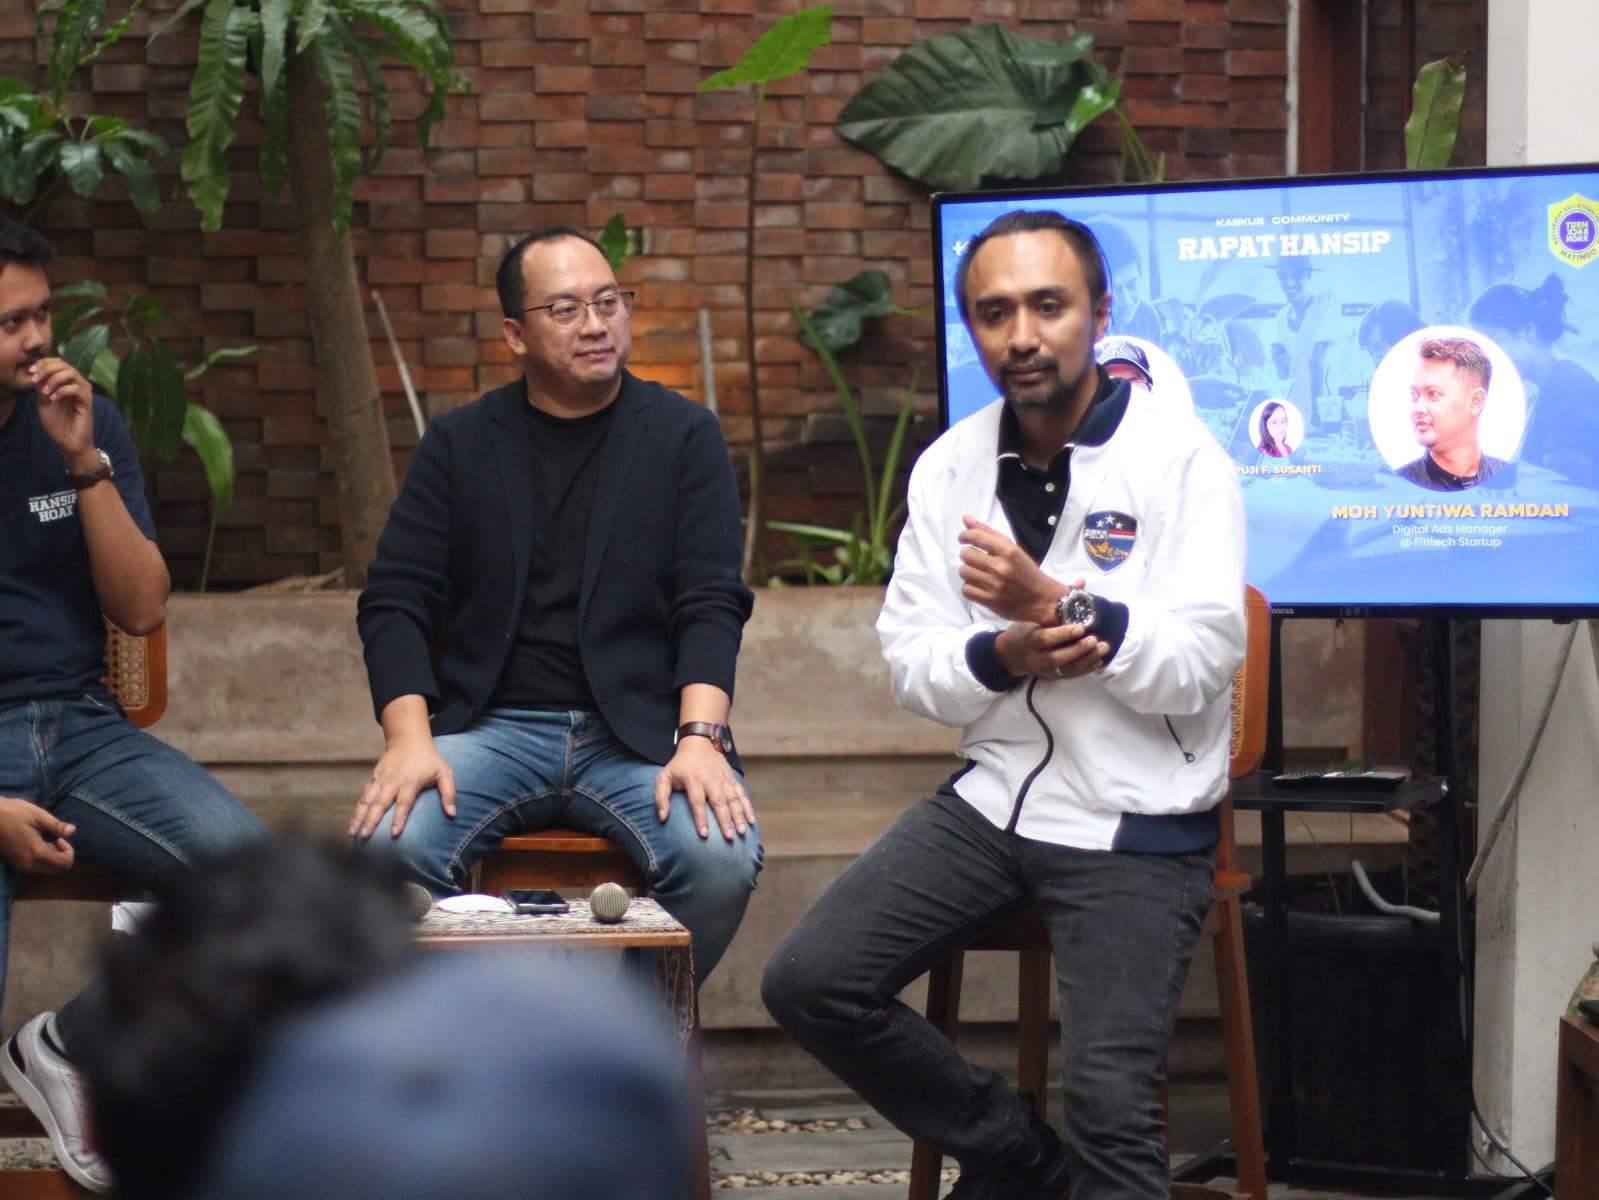 Diskusi “Rapat Hansip Hoax” yang dilaksanakan oleh Mafindo Jakarta dan Kaskus di Kina Kafe Jakarta Selatan, Sabtu (26/11/2022).
 (Foto: Istimewa) 